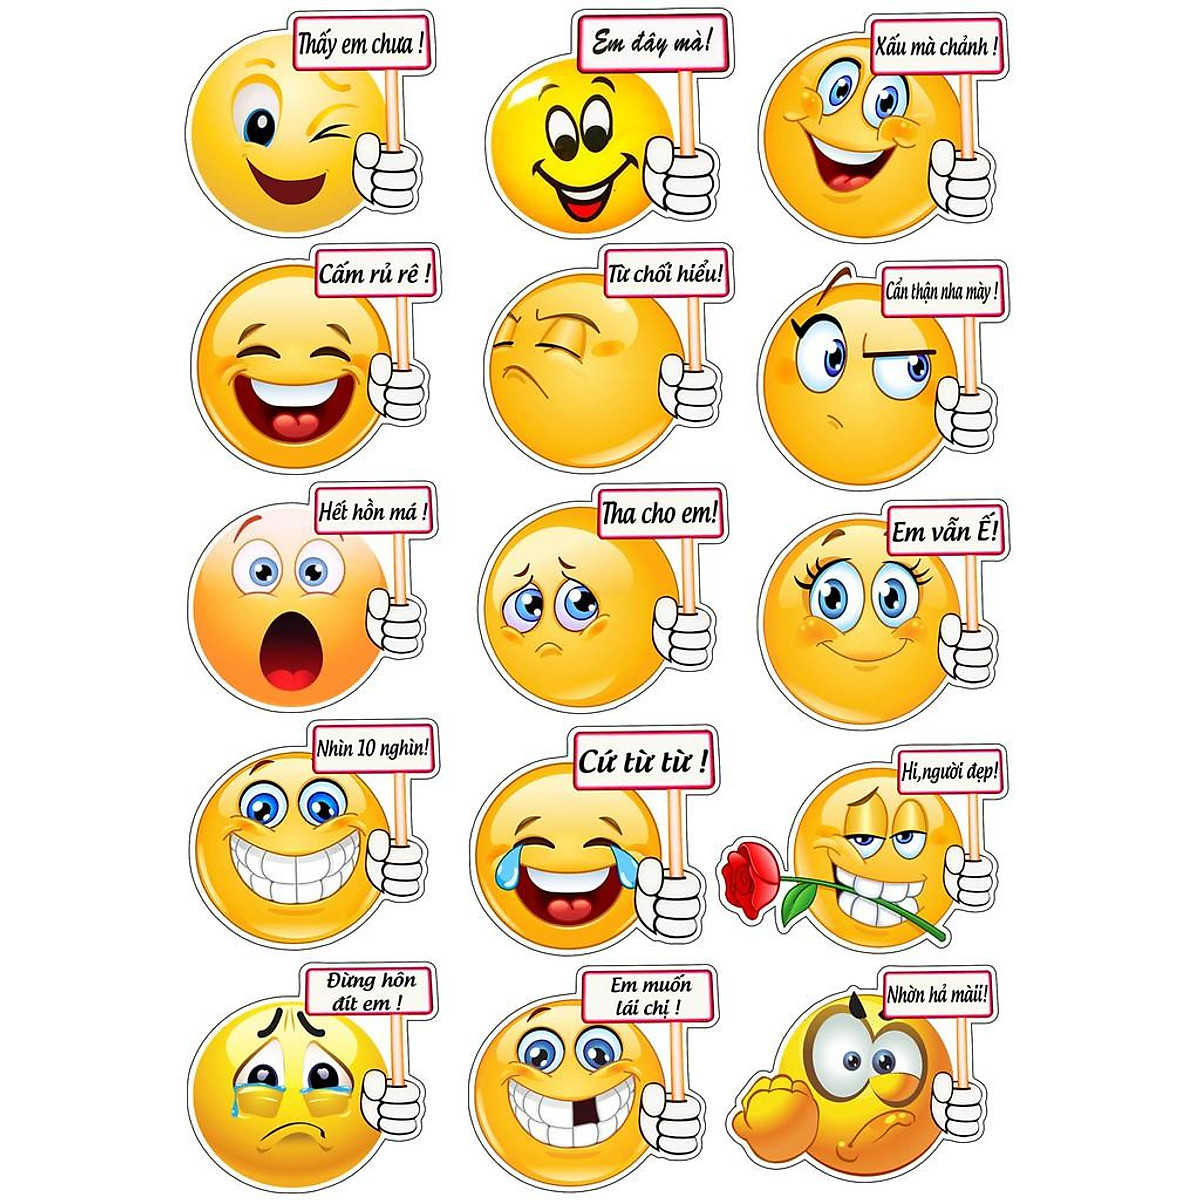 HÃY THƯỞNG THỨC NHỮNG ICON CẢNH BÁO VUI NHỘN! Những biểu tượng này không chỉ cảnh báo mà còn khiến bạn cười nghiêng ngả vì sự hài hước và độc đáo của chúng. Điểm qua vài nét vẽ, bạn sẽ có thêm nhiều cảm xúc tươi mới trong cuộc sống đấy!